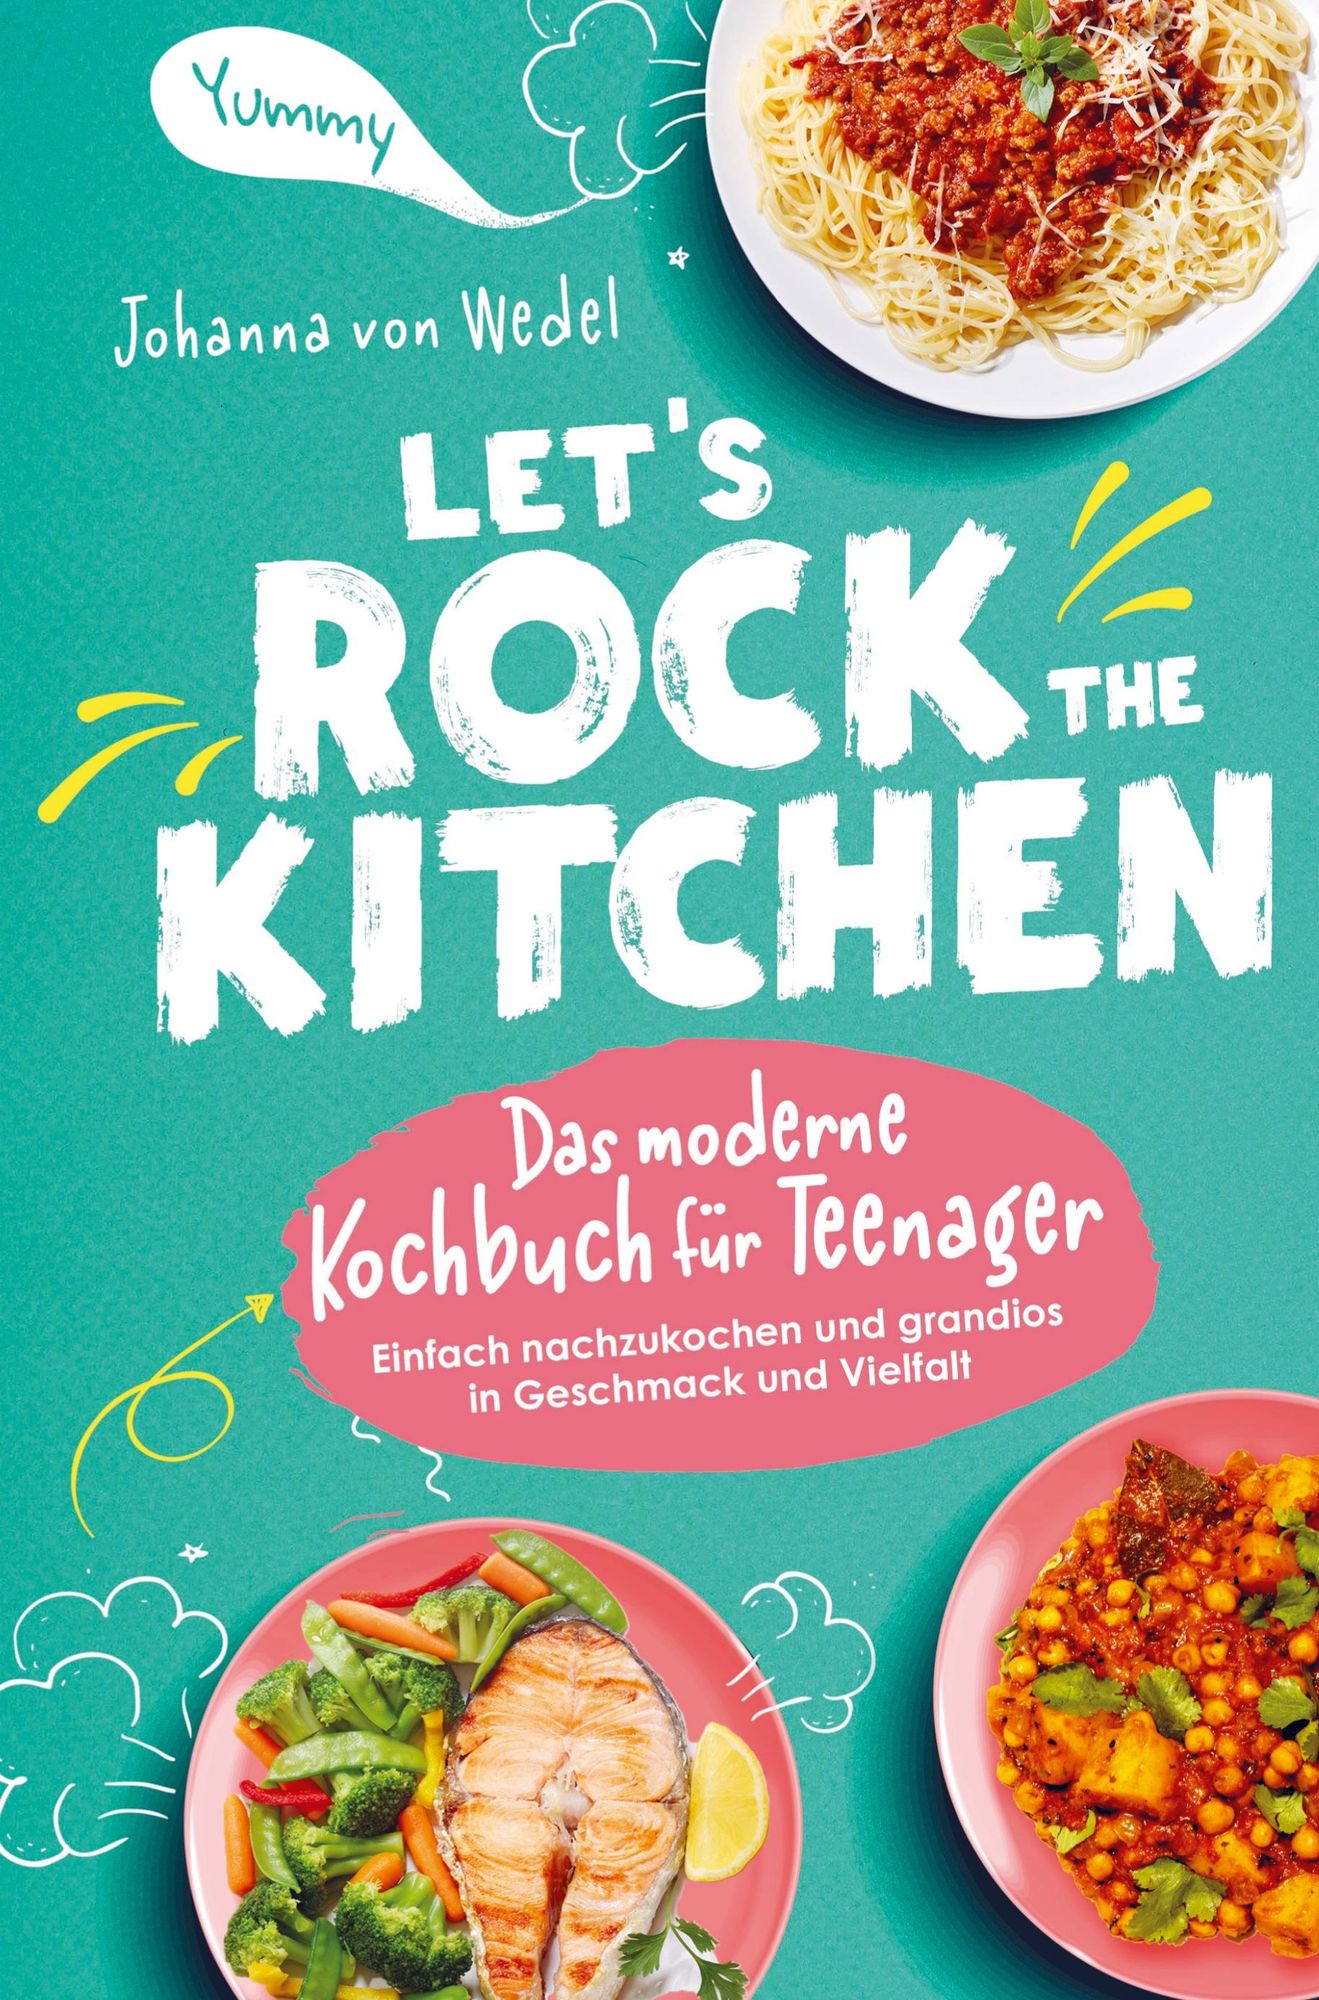 Let's Rock The Kitchen - Das moderne Kochbuch für Teenager - Einfach  nachzukochen und grandios in Geschmack und Vielfalt' von 'Johanna Wedel' -  Buch - '978-94-036-8568-7